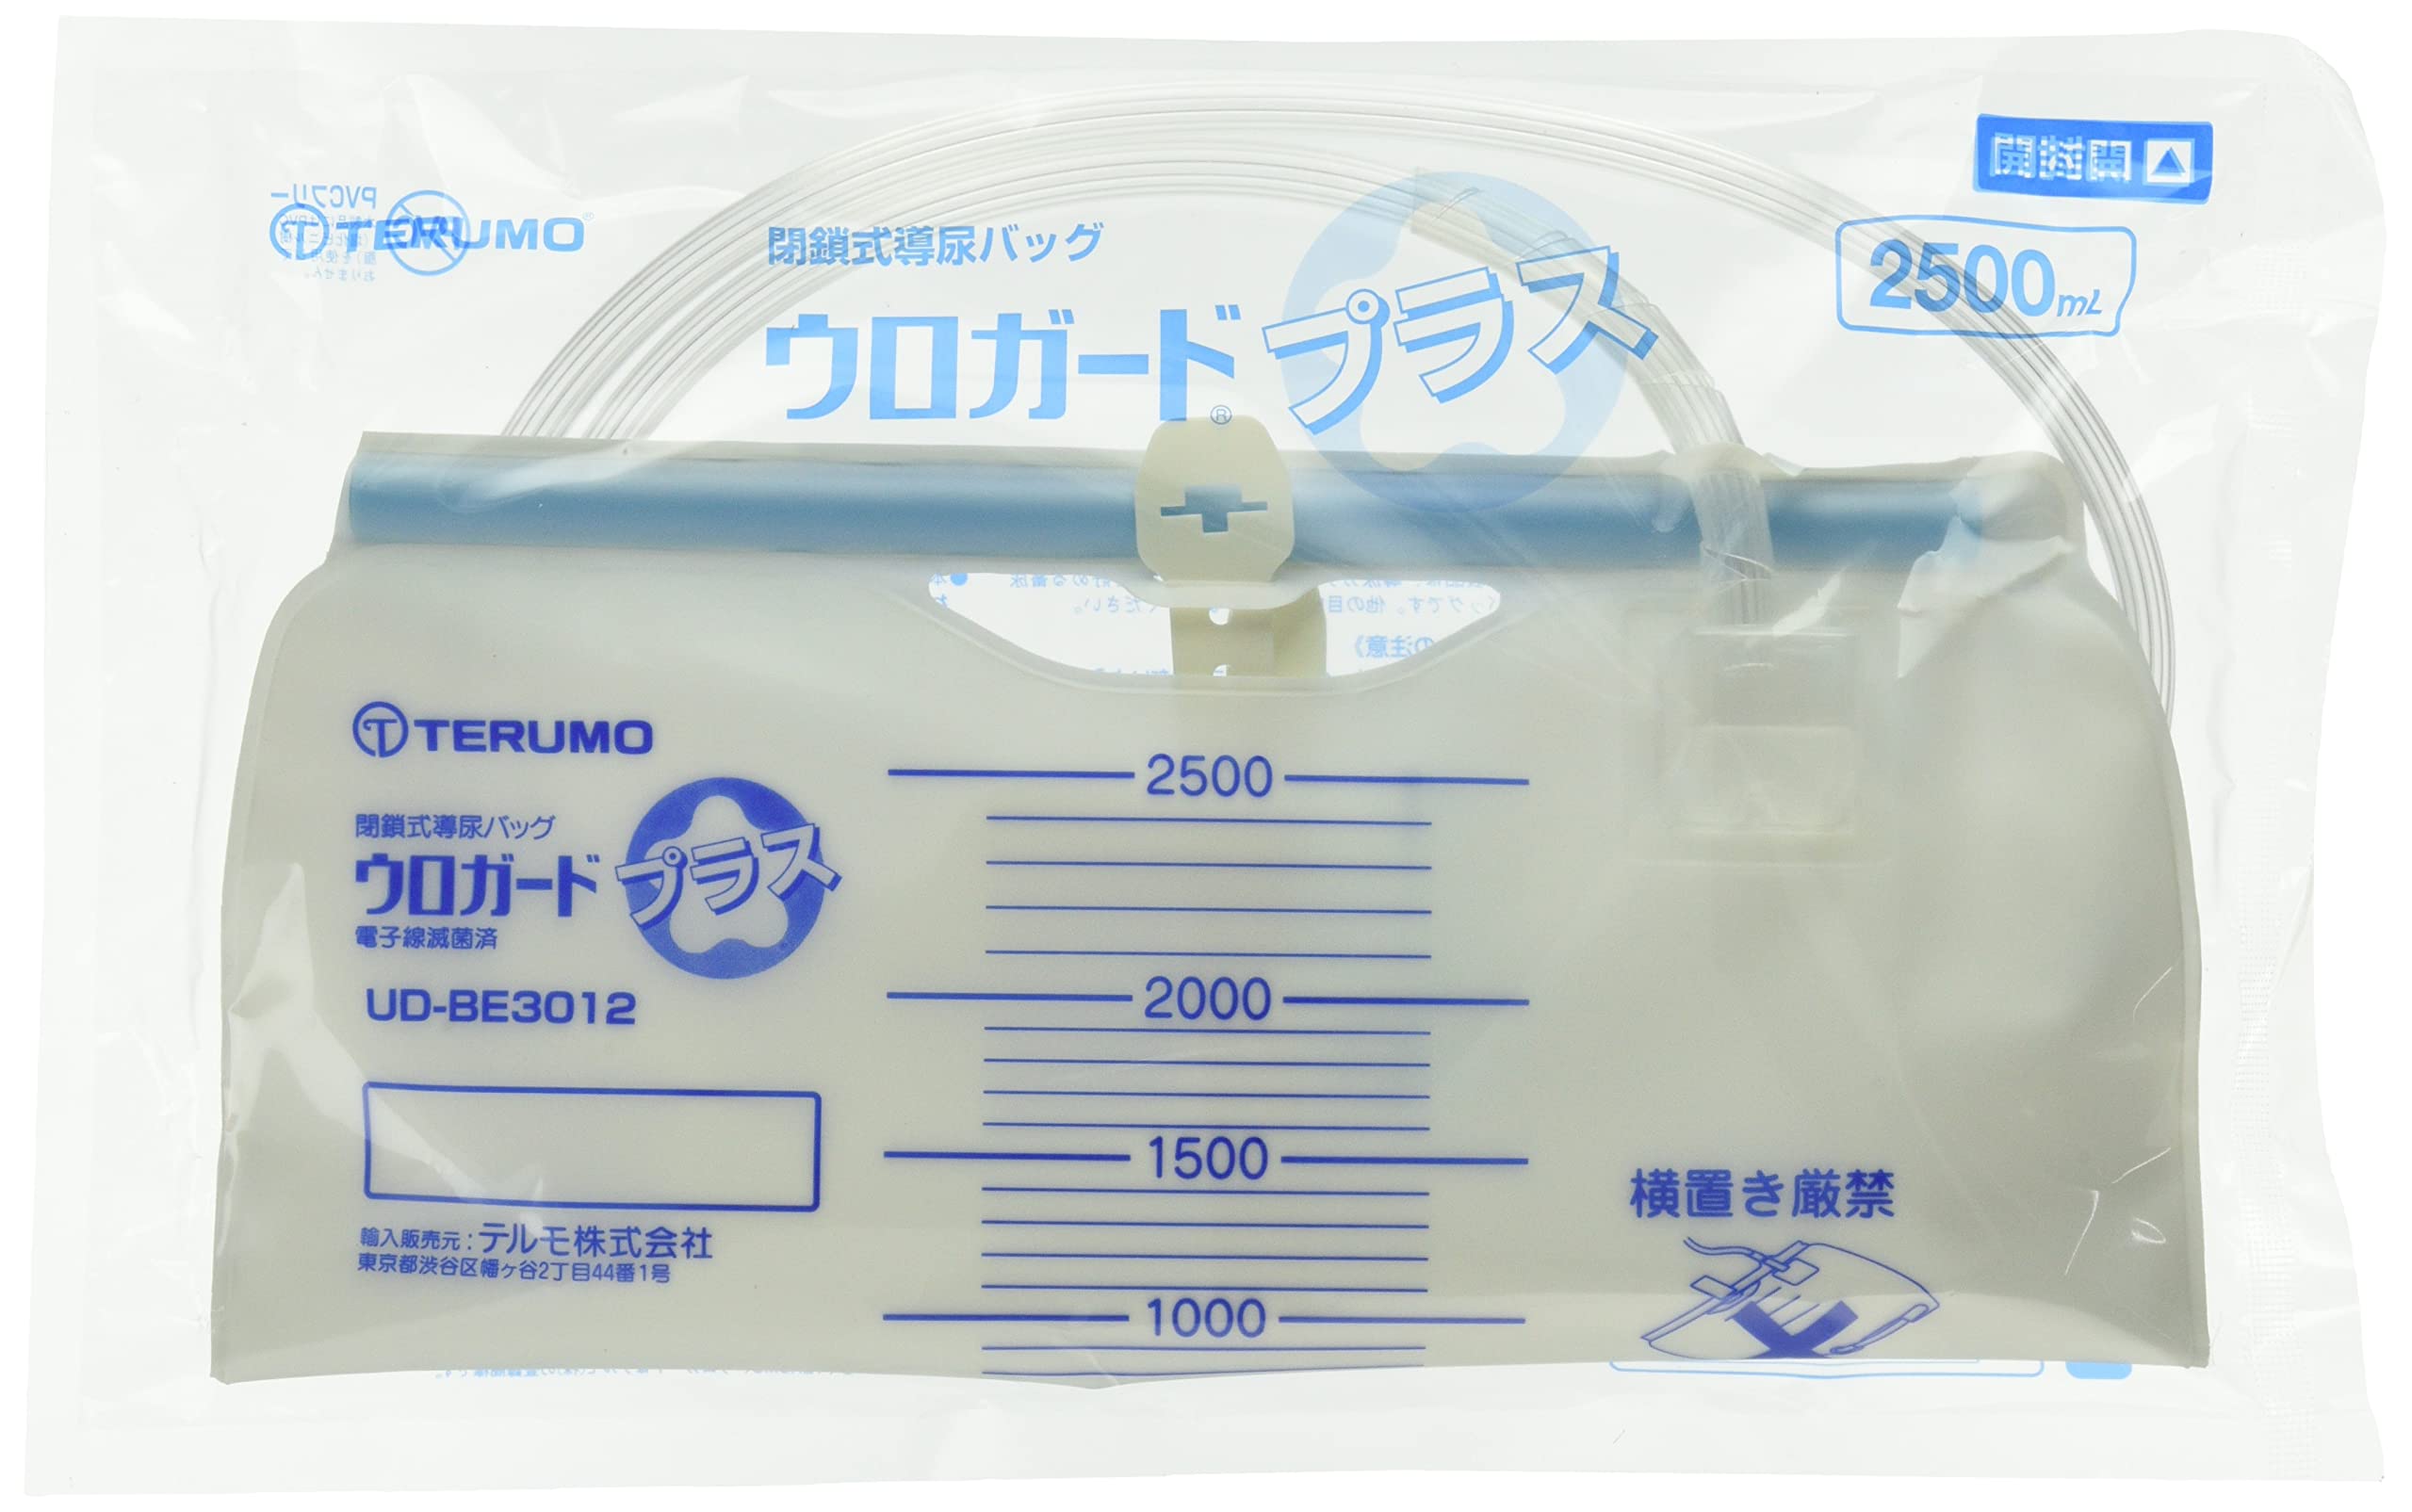 テルモ ウロガードプラス(閉鎖式導尿バッグ) 新鮮尿採取口なし UD-BE3012